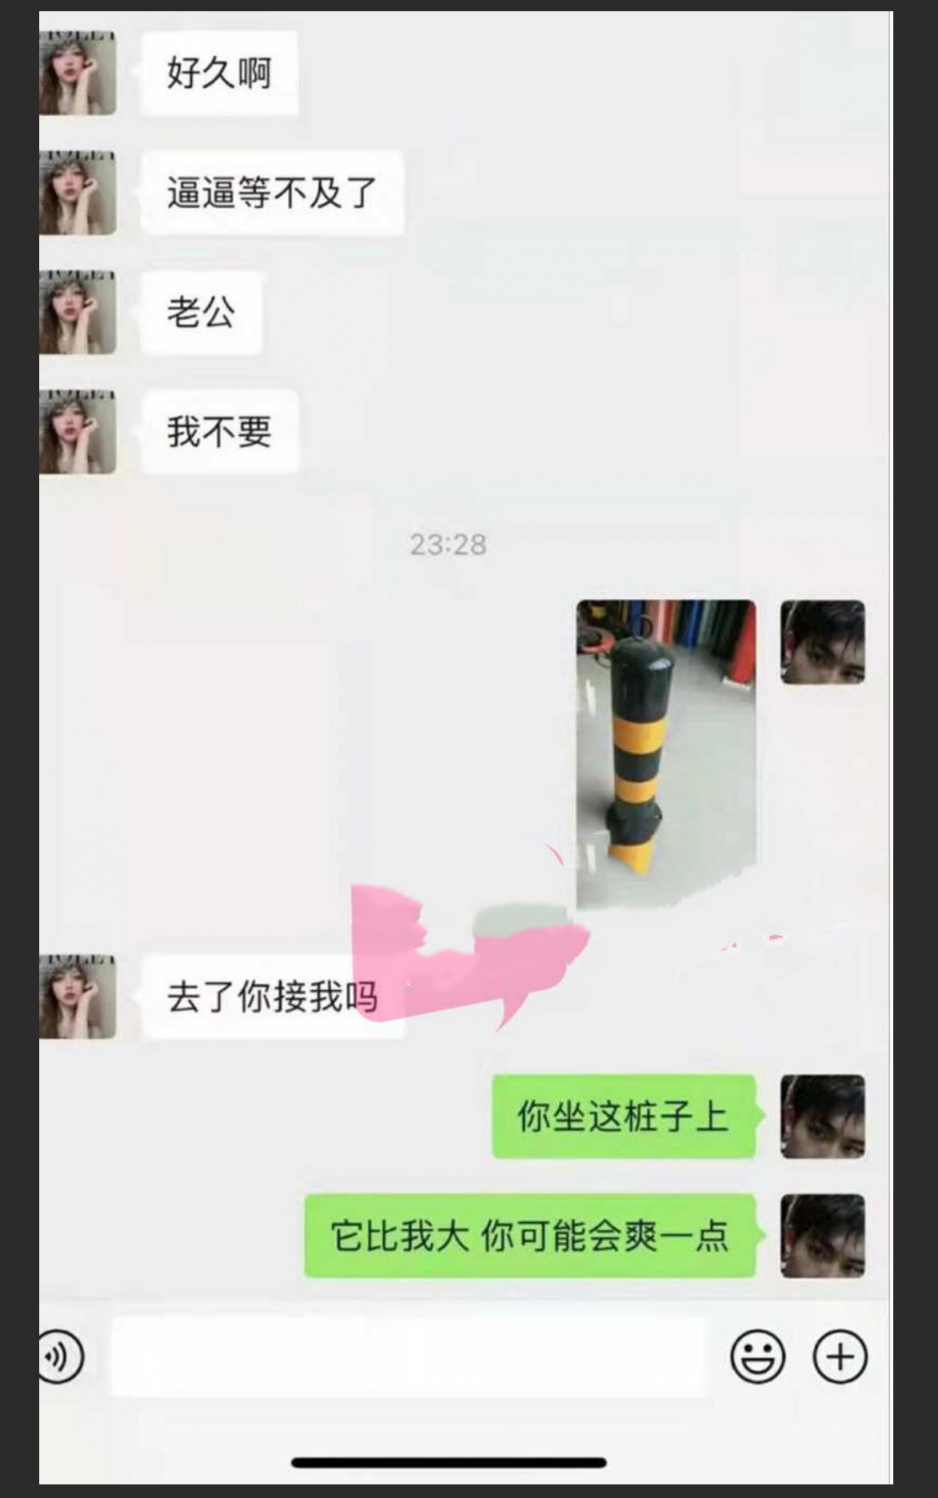 四川传媒学院再爆师生恋 女老师约炮男学生 视频遭曝光！